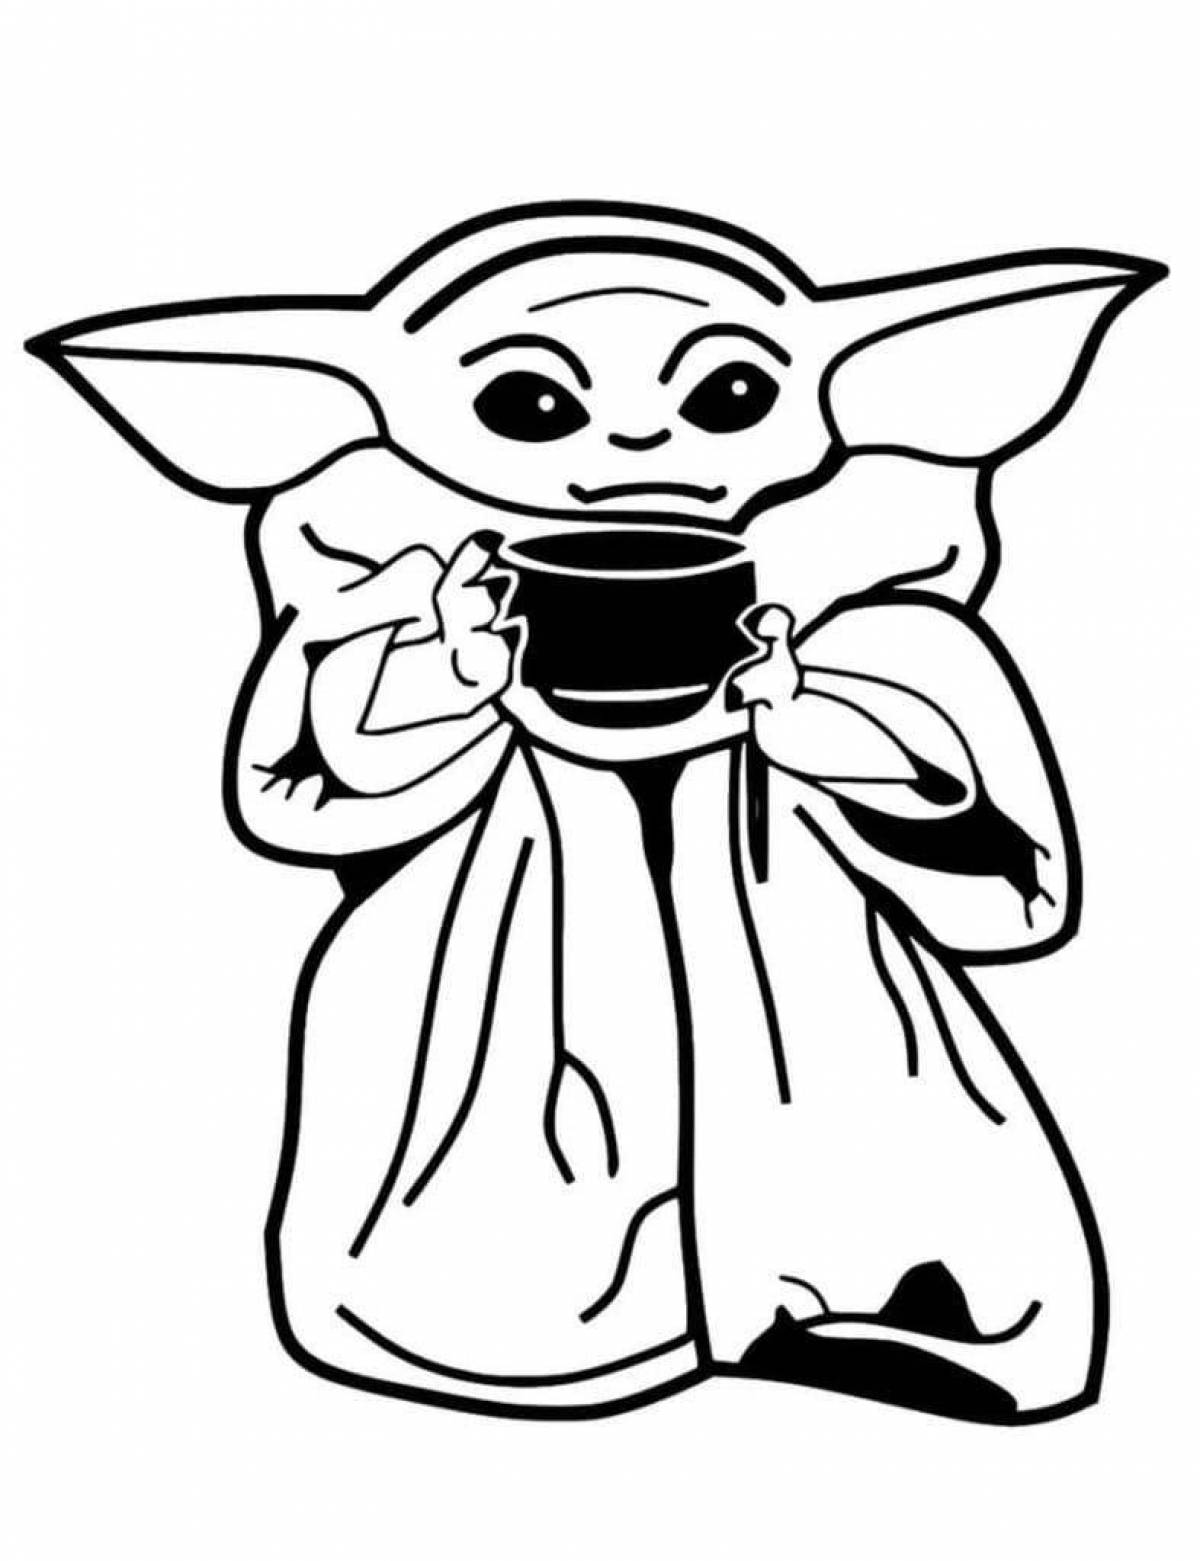 Naughty Yoda baby coloring page